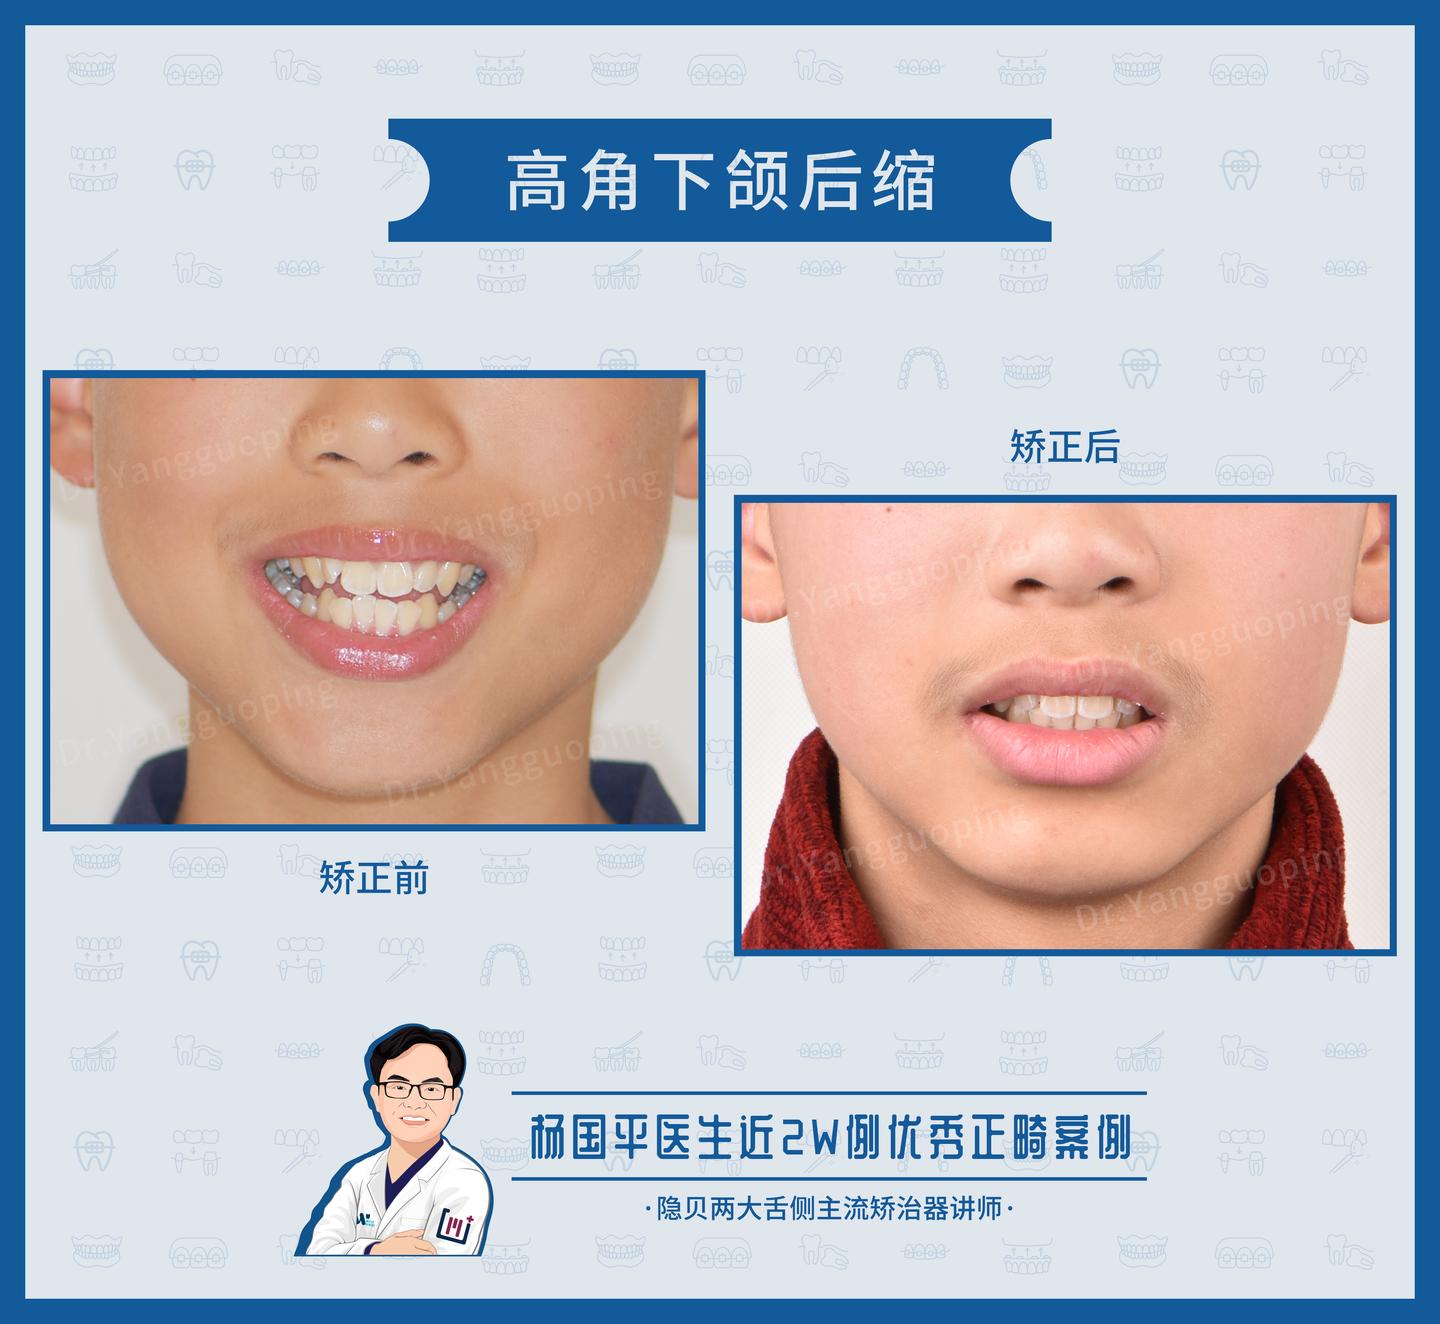 上海牙齿矫正:舌侧矫正案例no.633,上下牙列片切解决高角下颌后缩